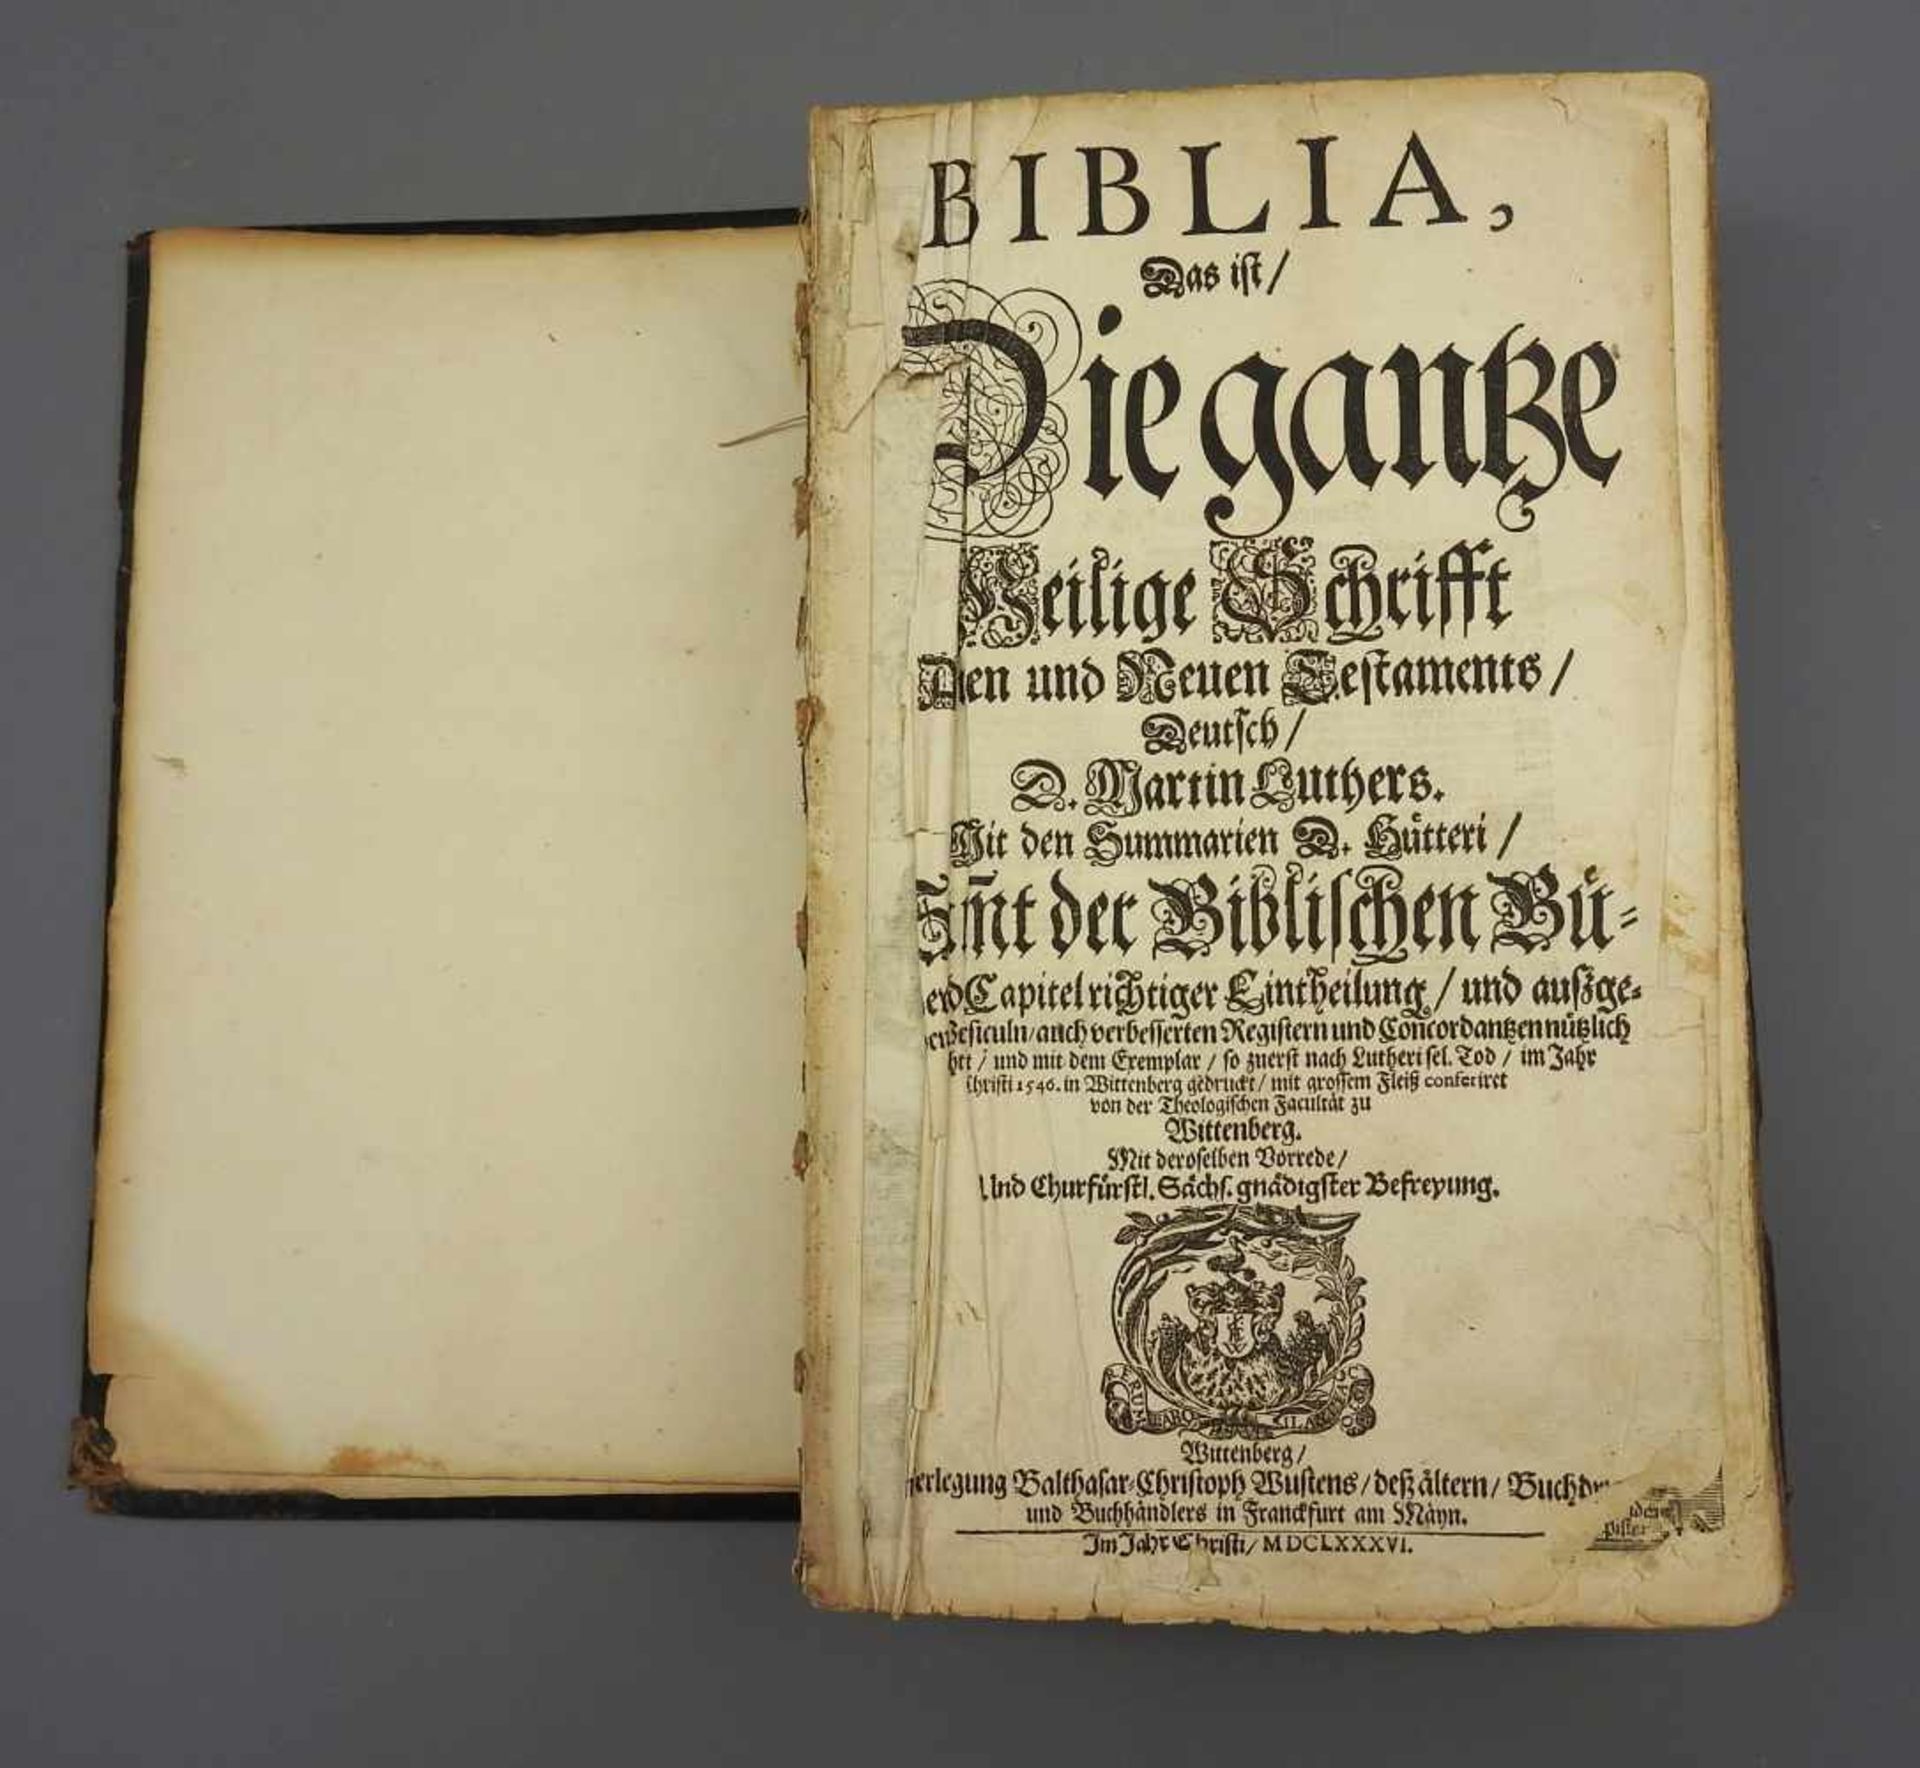 Alte BibelAlte Bibel in Ledereinband. Ehemals mit Montur, diese jedoch nicht mehr vorhanden. "Die